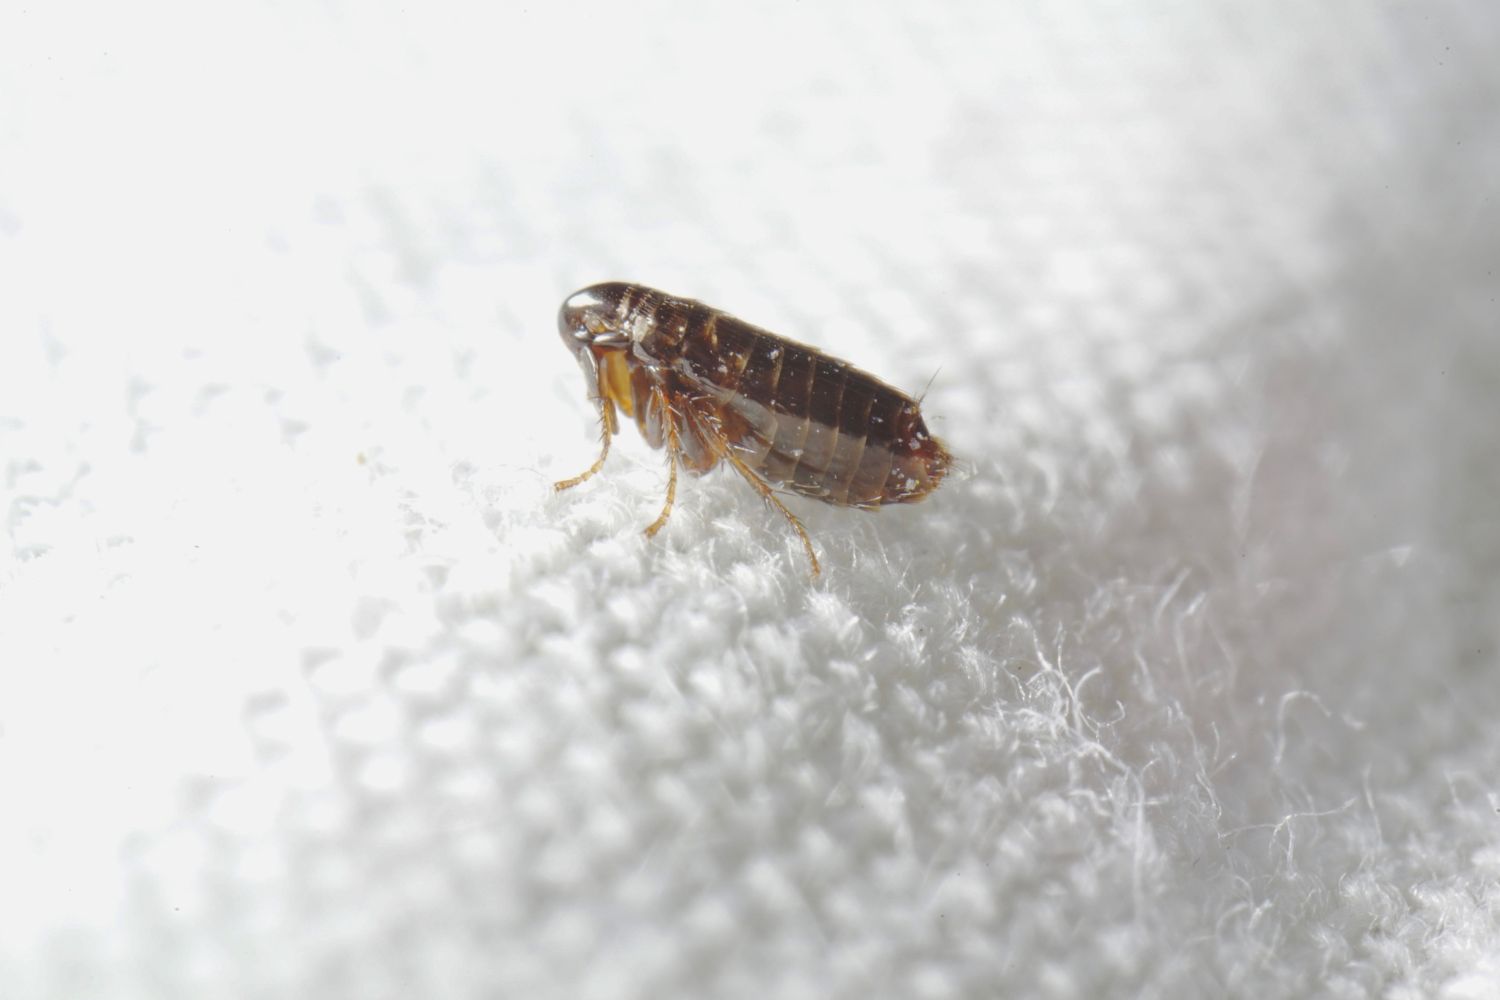 A close up of a flea. 